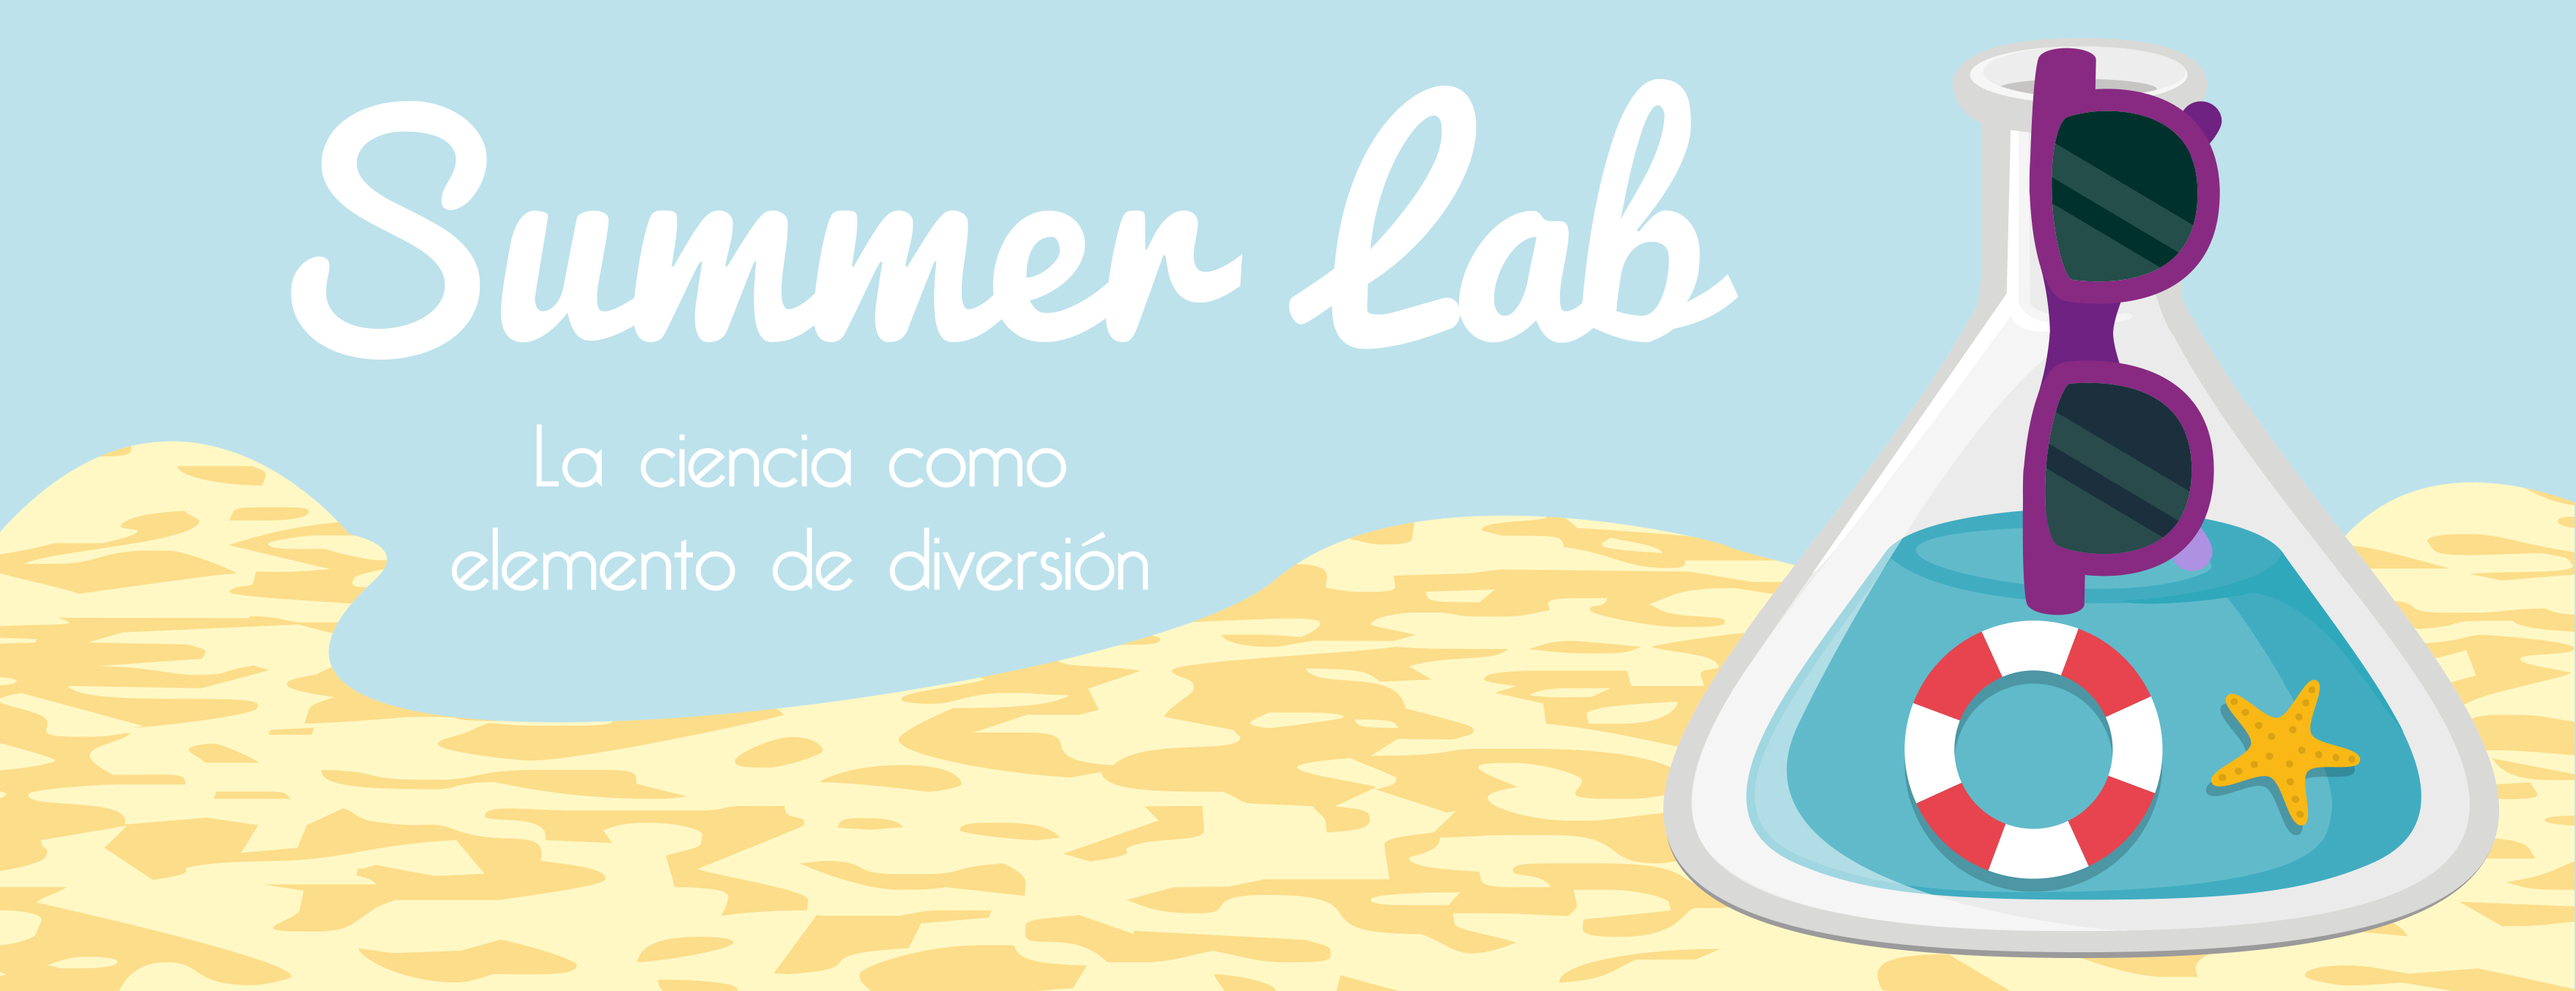 Summer Lab Campamentos Esciencia » Campamentos Esciencia